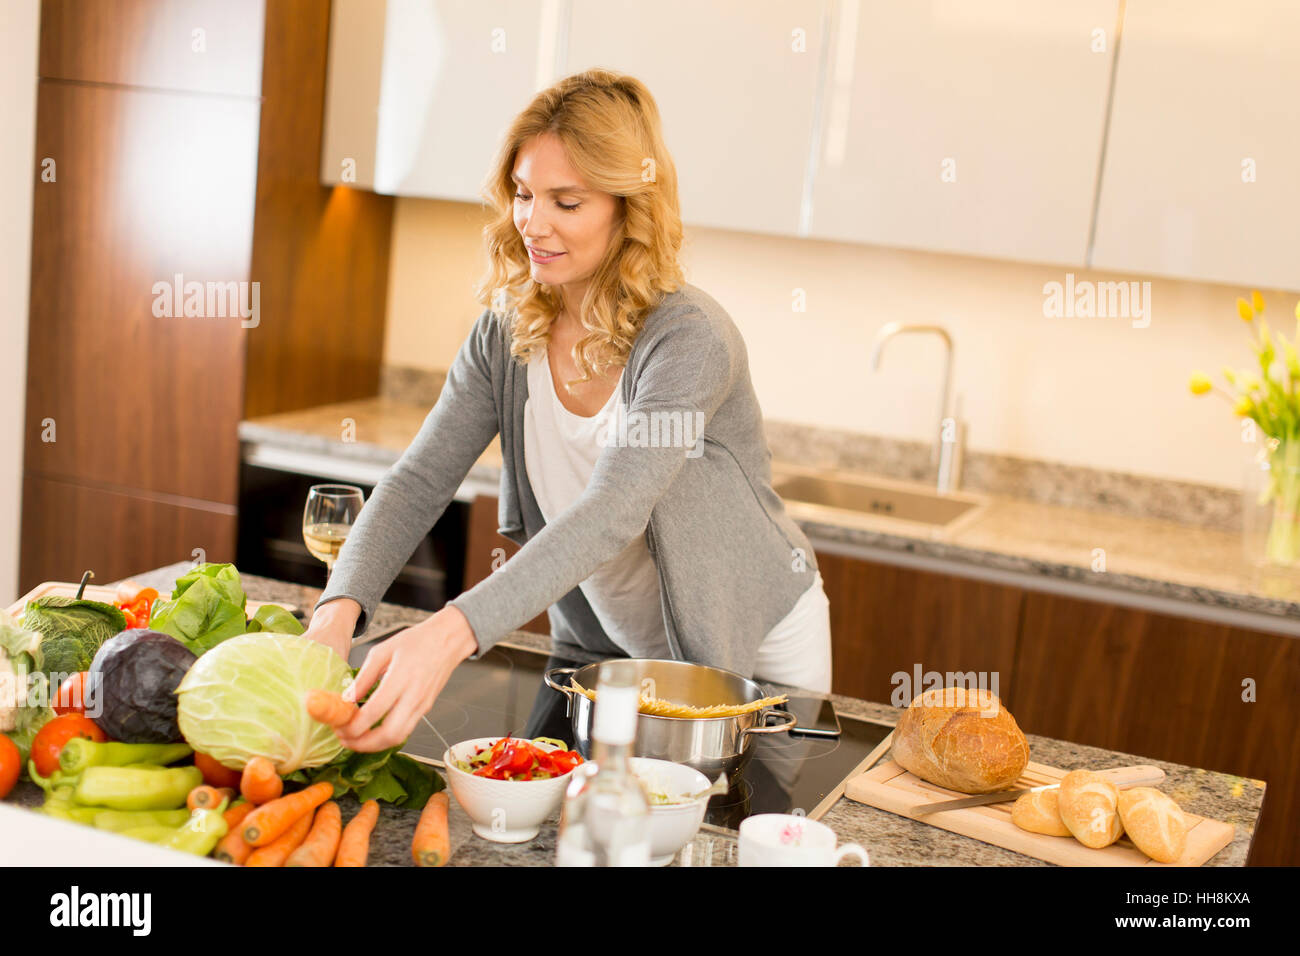 Mujer joven cocinar alimentos saludables en la cocina moderna Foto de stock